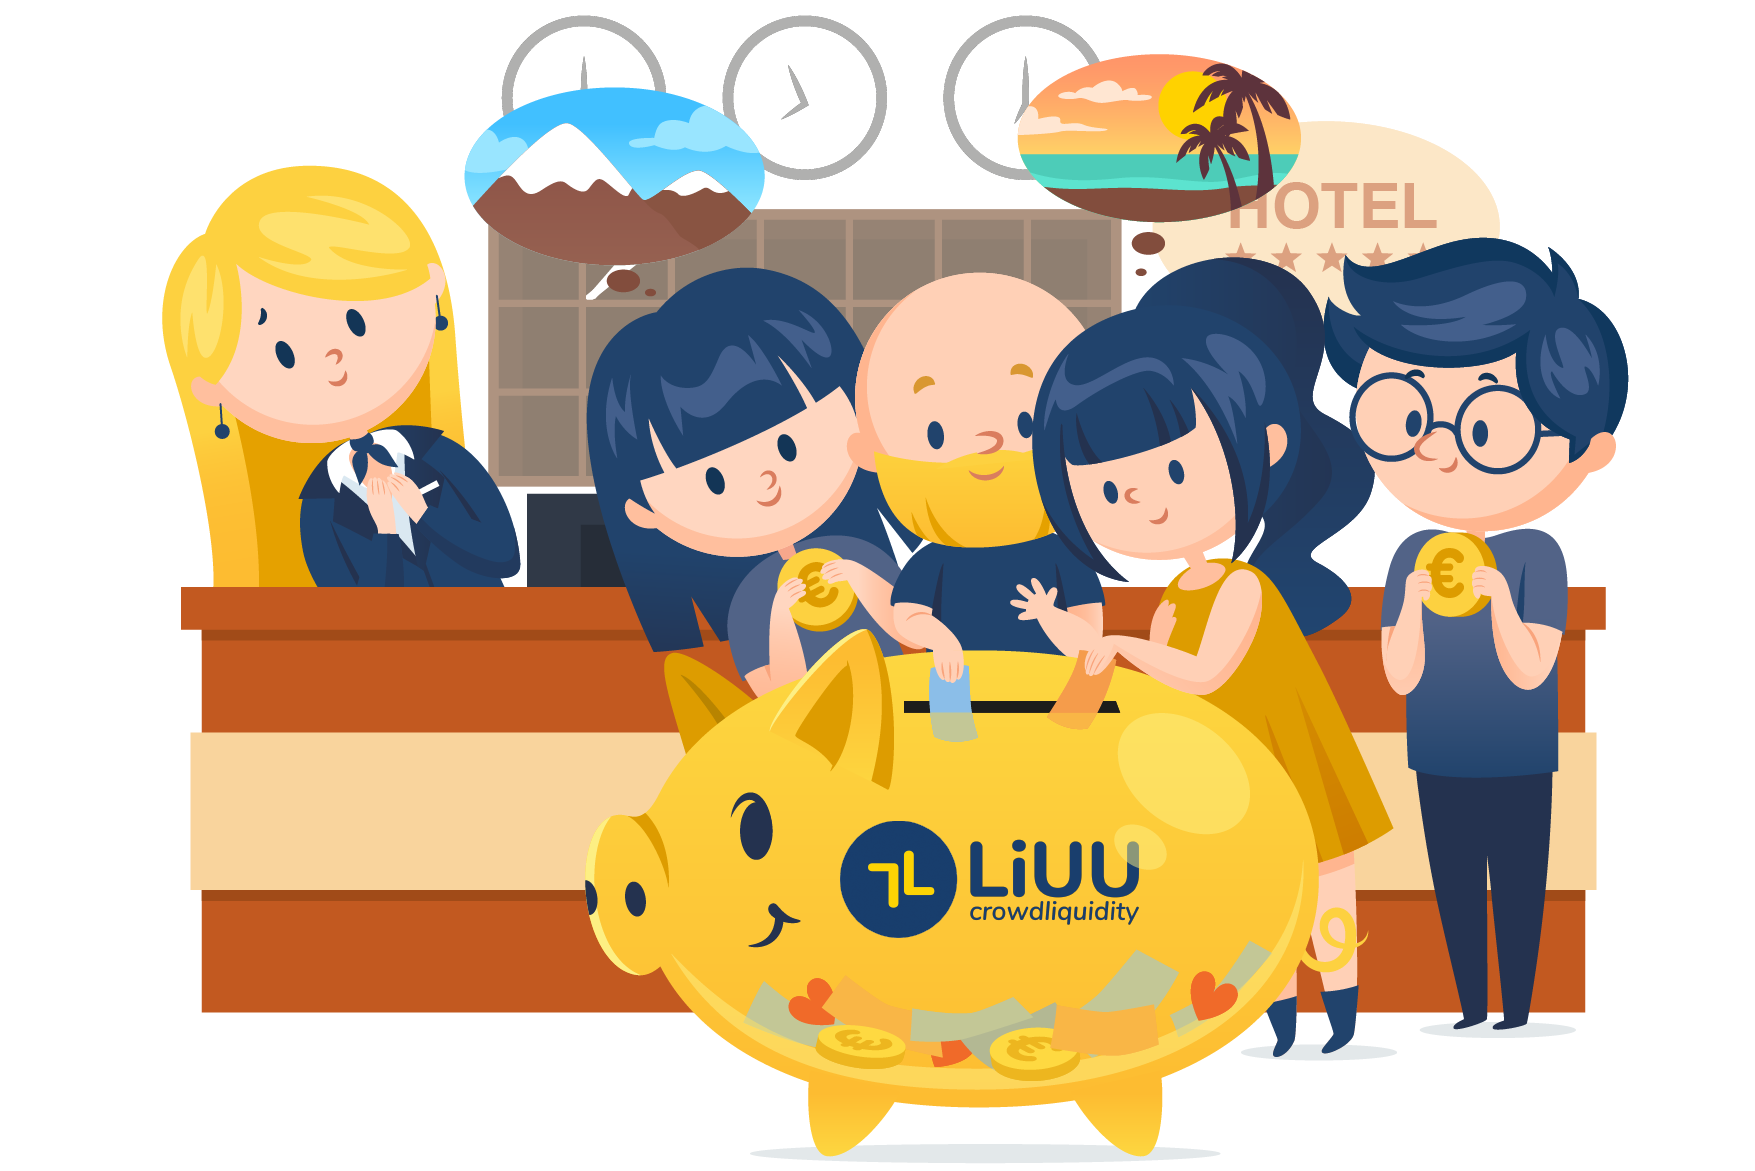 LiUU crowdliquidity